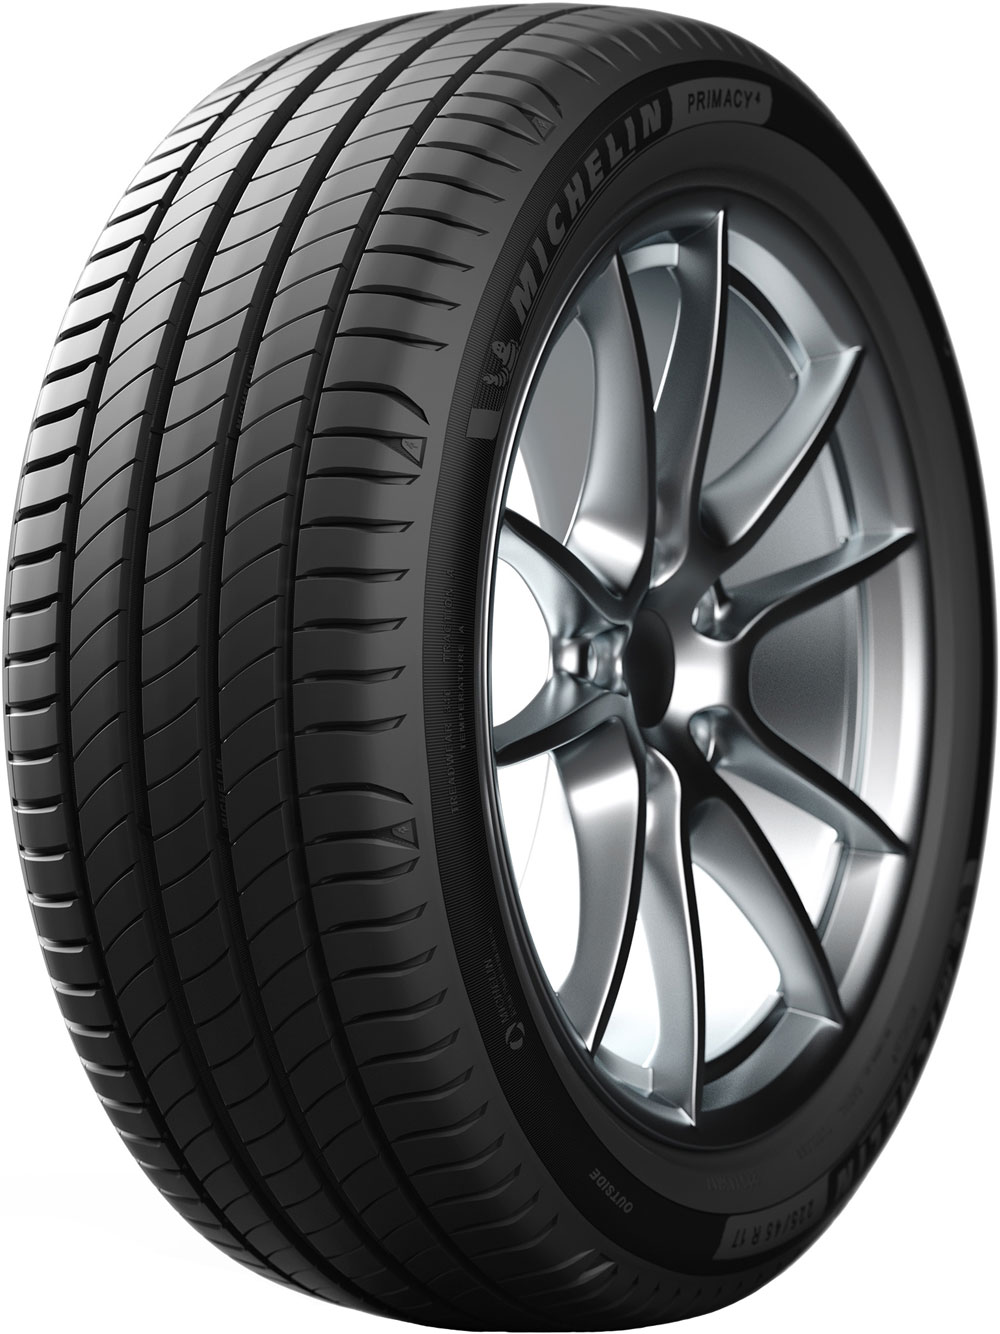 Автомобилни гуми MICHELIN PRIMACY 4 XL XL 225/50 R17 98Y